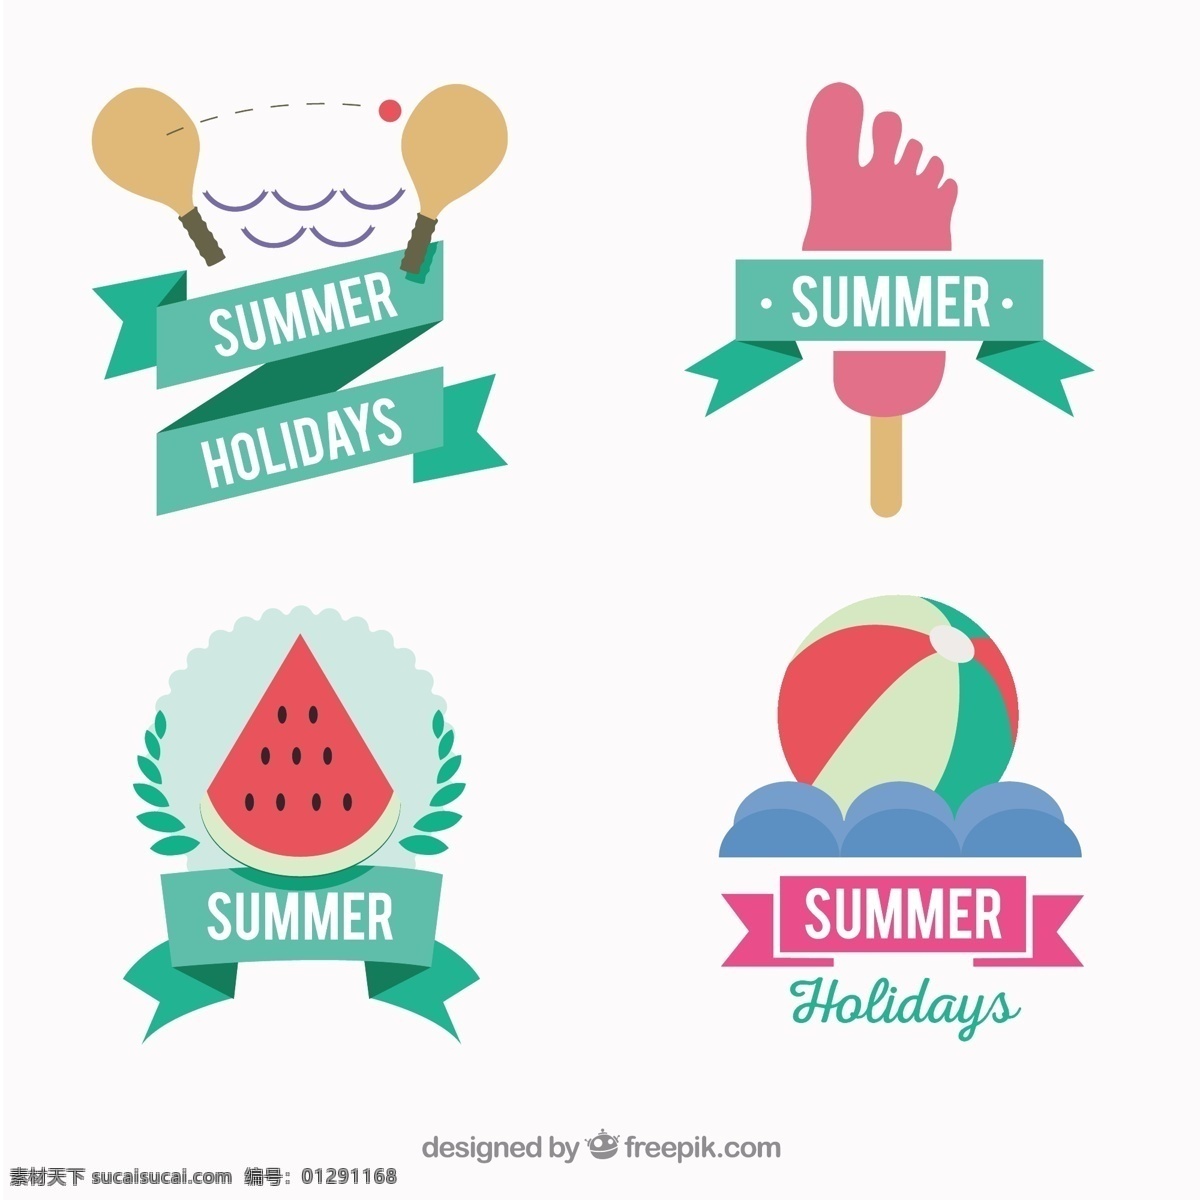 暑假的徽章 夏天 徽章 海滩 冰淇淋 冰 会徽 度假 放松 夏天的海滩 西瓜霜 节假日 夏季 白色